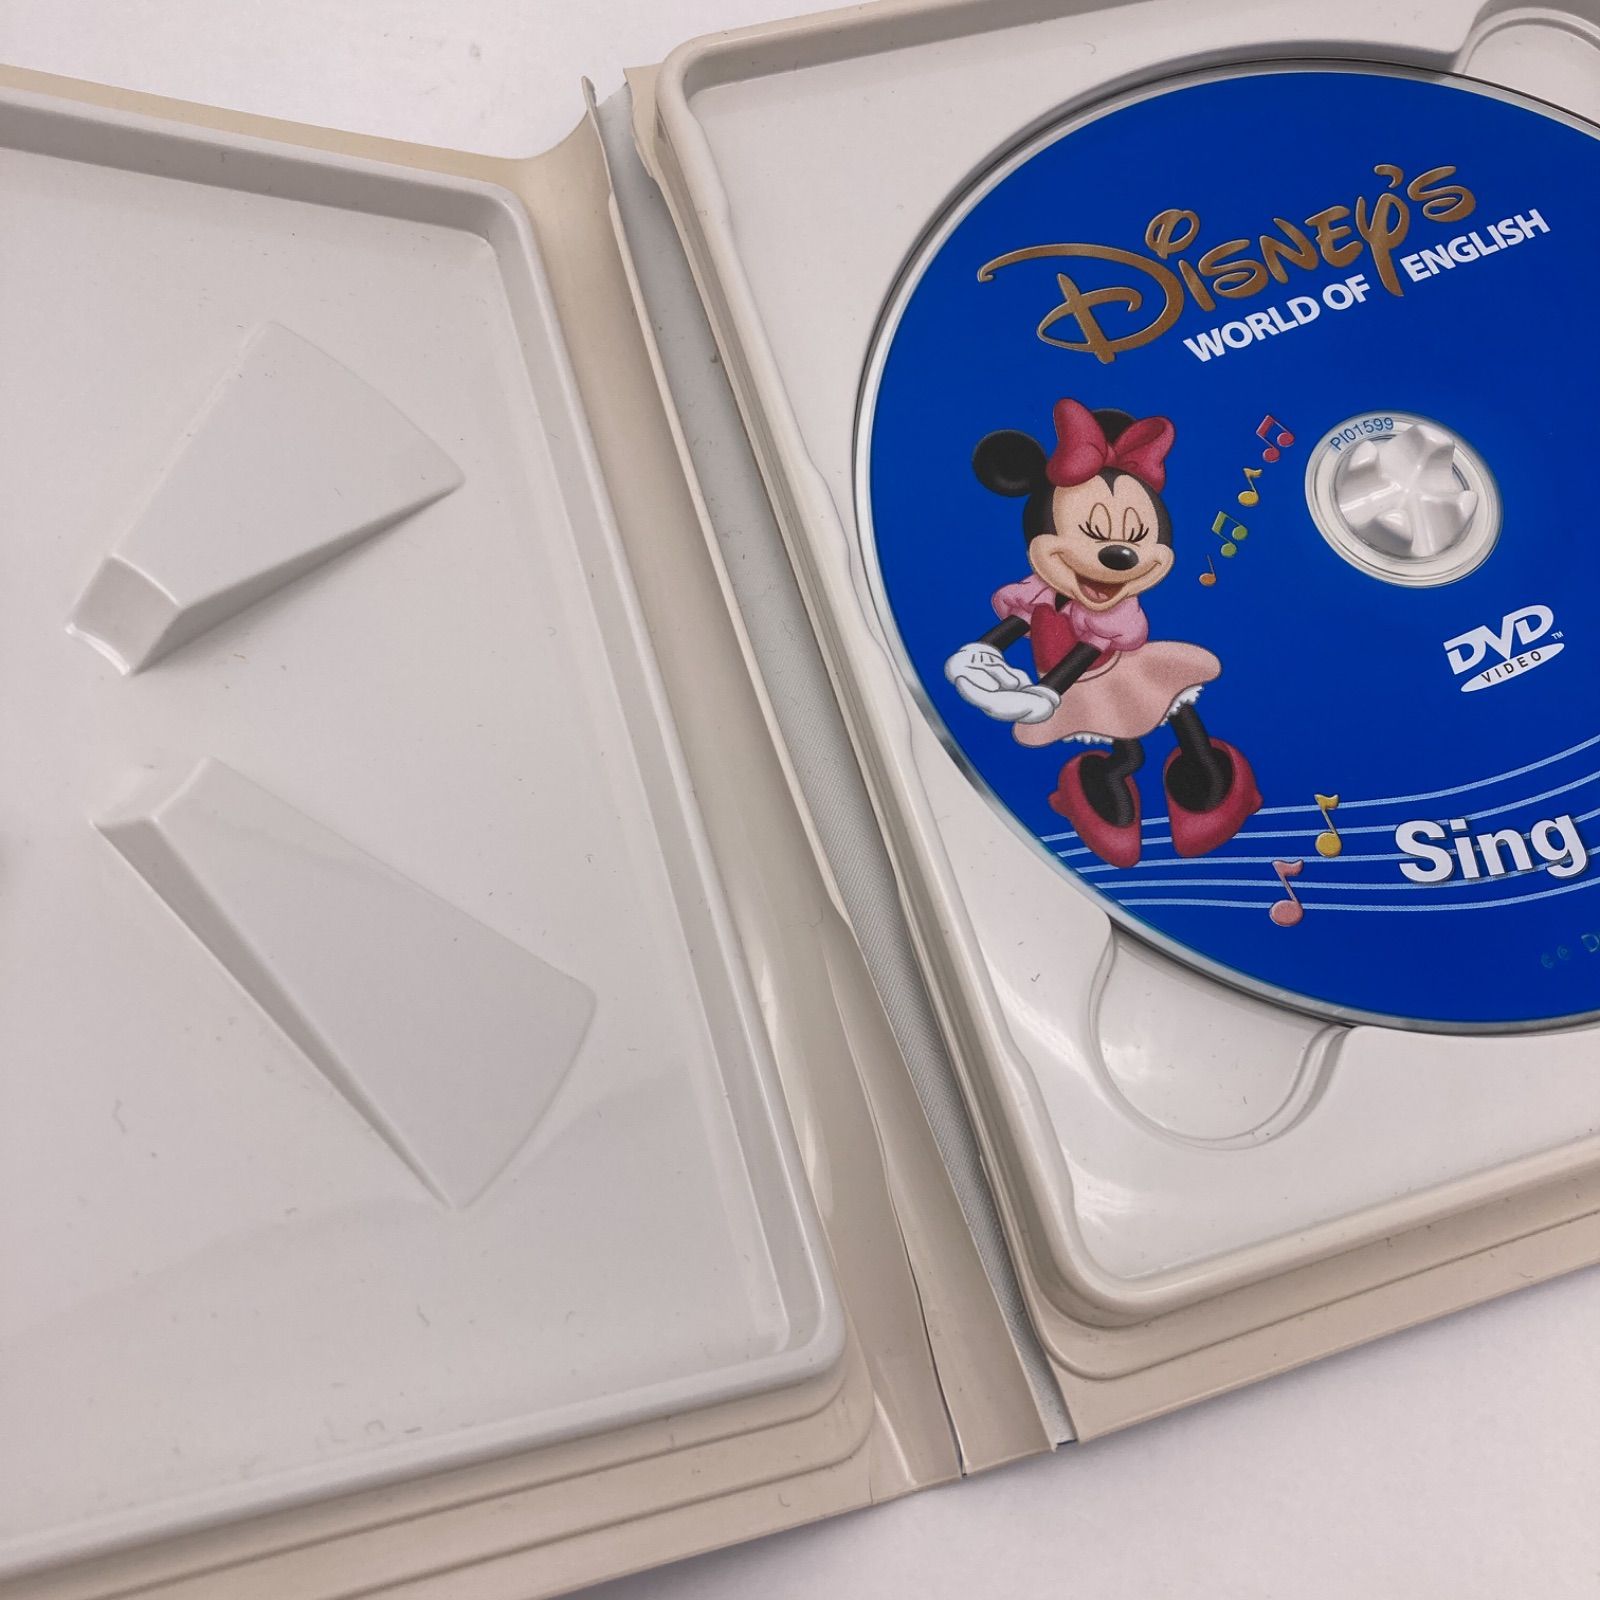 2011年購入 シングアロングセット　DVD12枚　旧子役　絵本＆CD　字幕あり　ディズニー英語システム　DWE　Disney　ワールドファミリー　 中古　406026